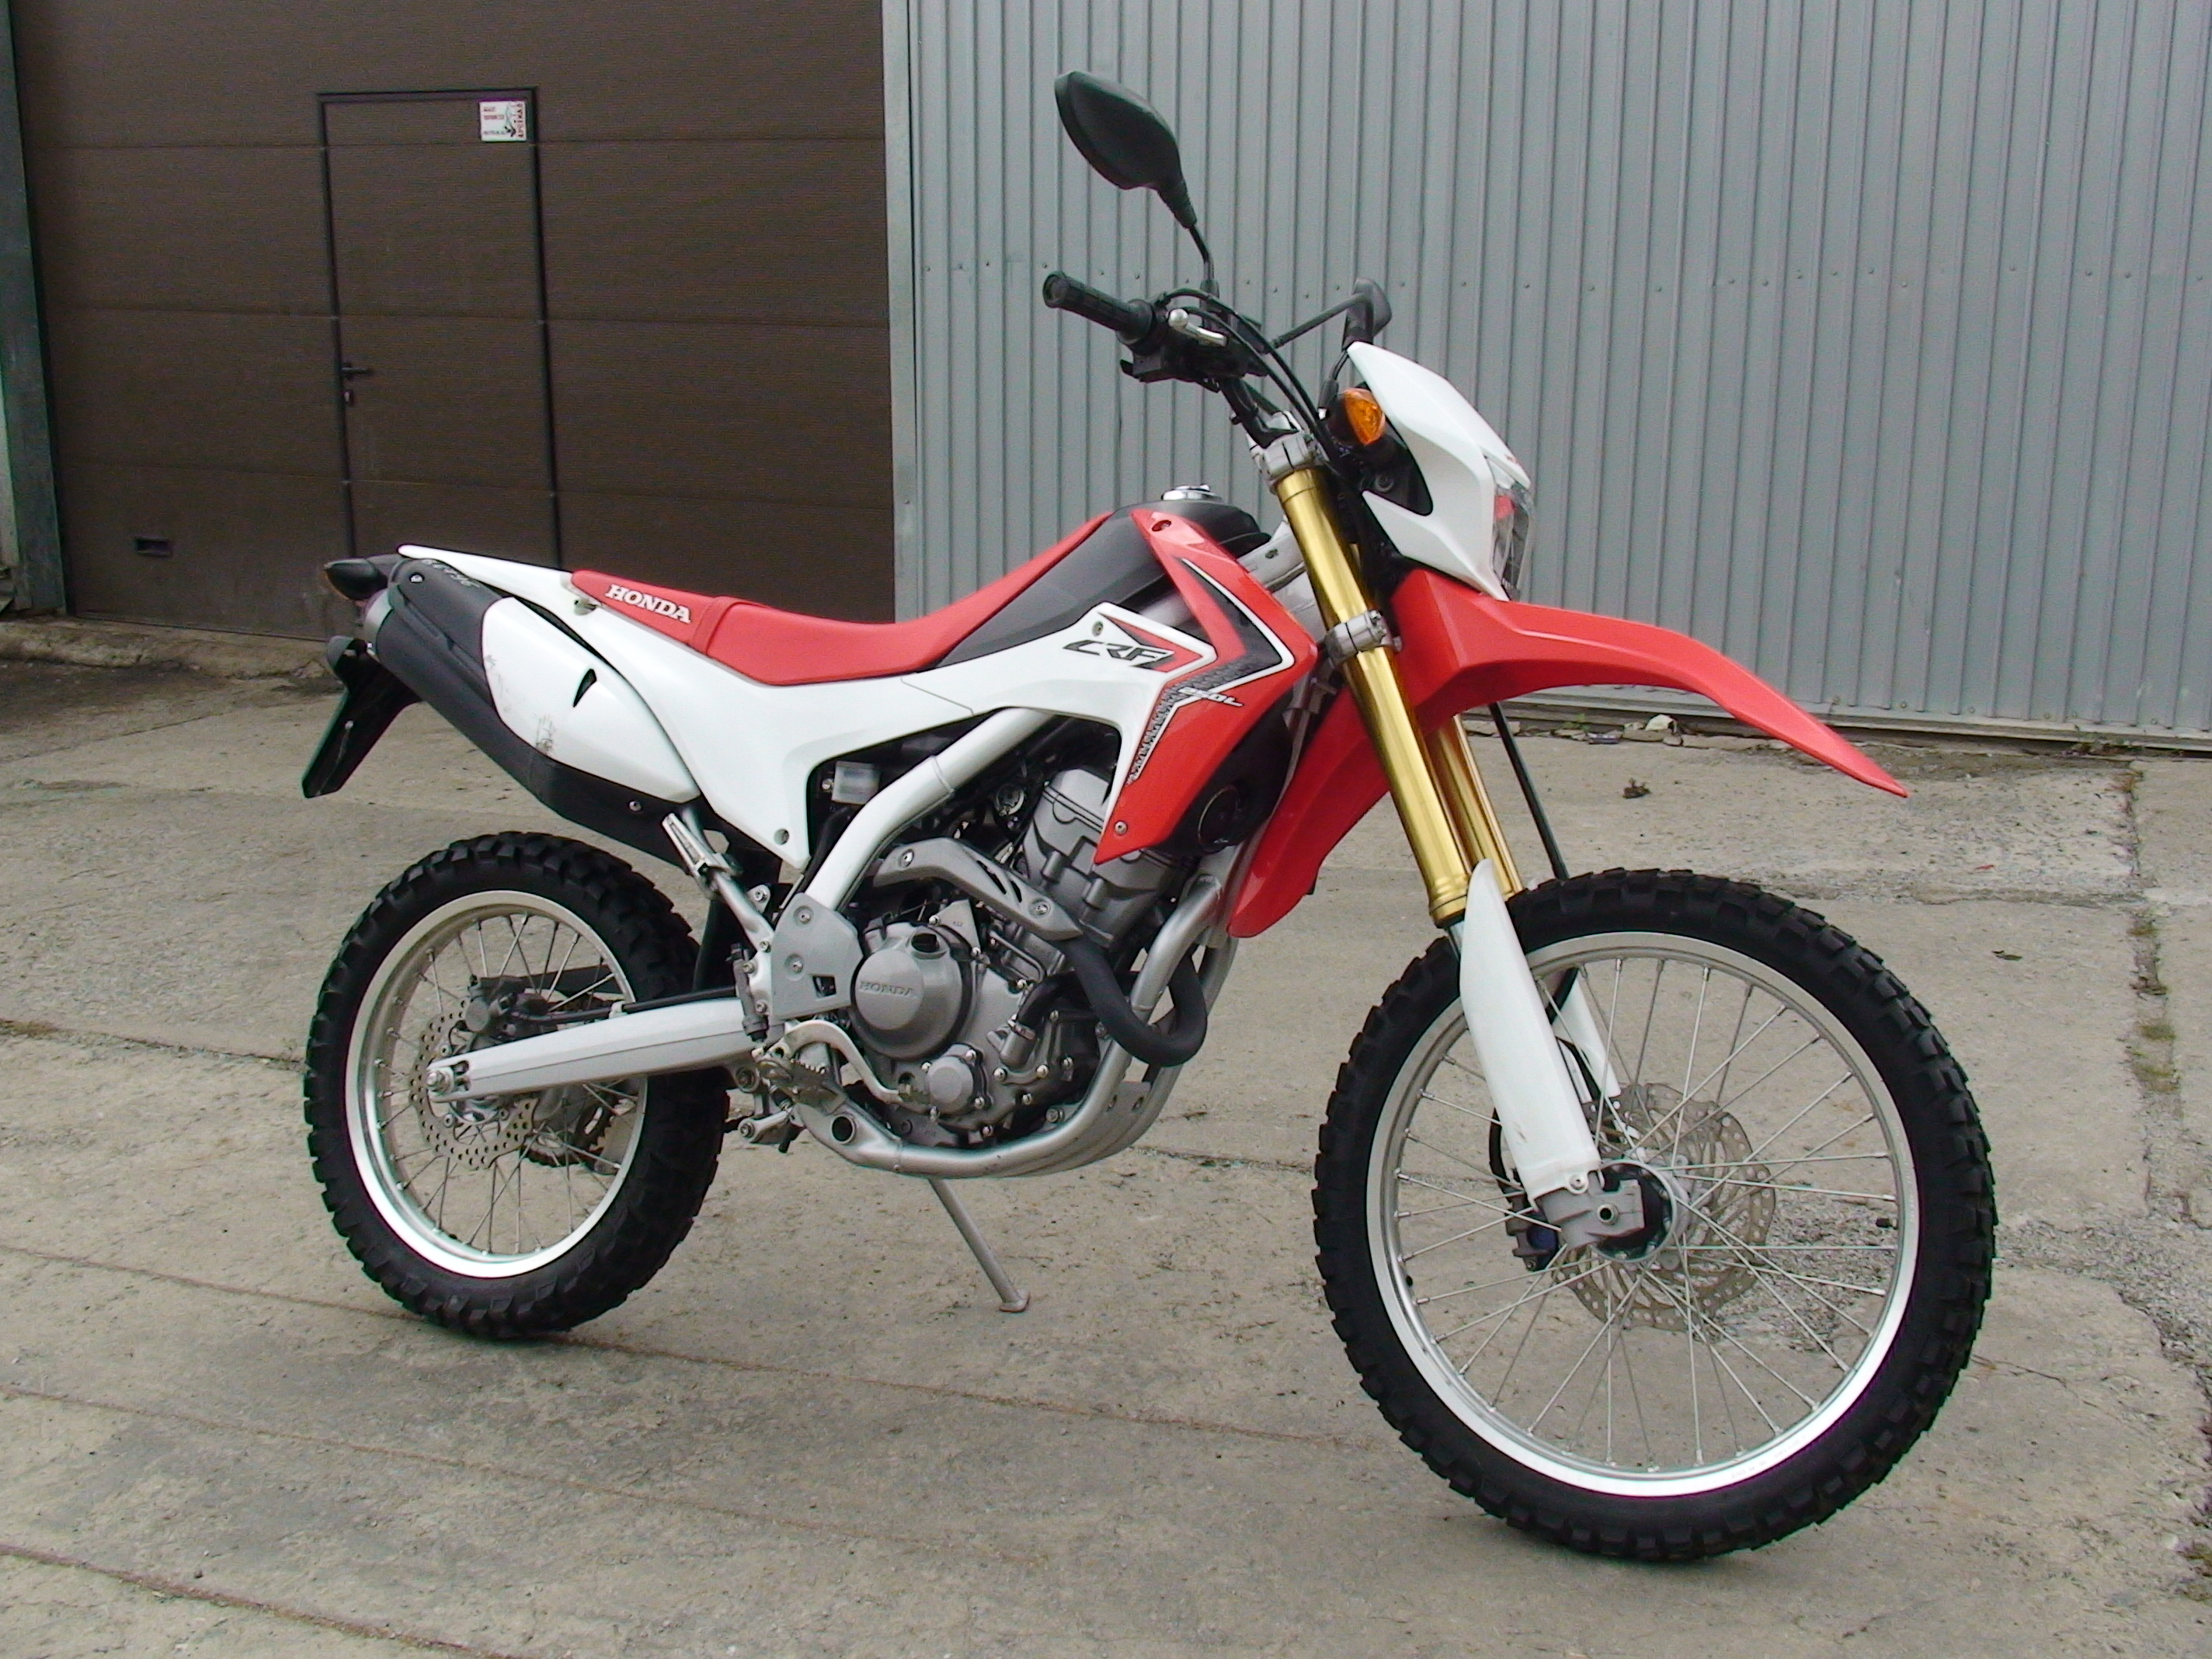 мотоцикл honda crf250l отзывы